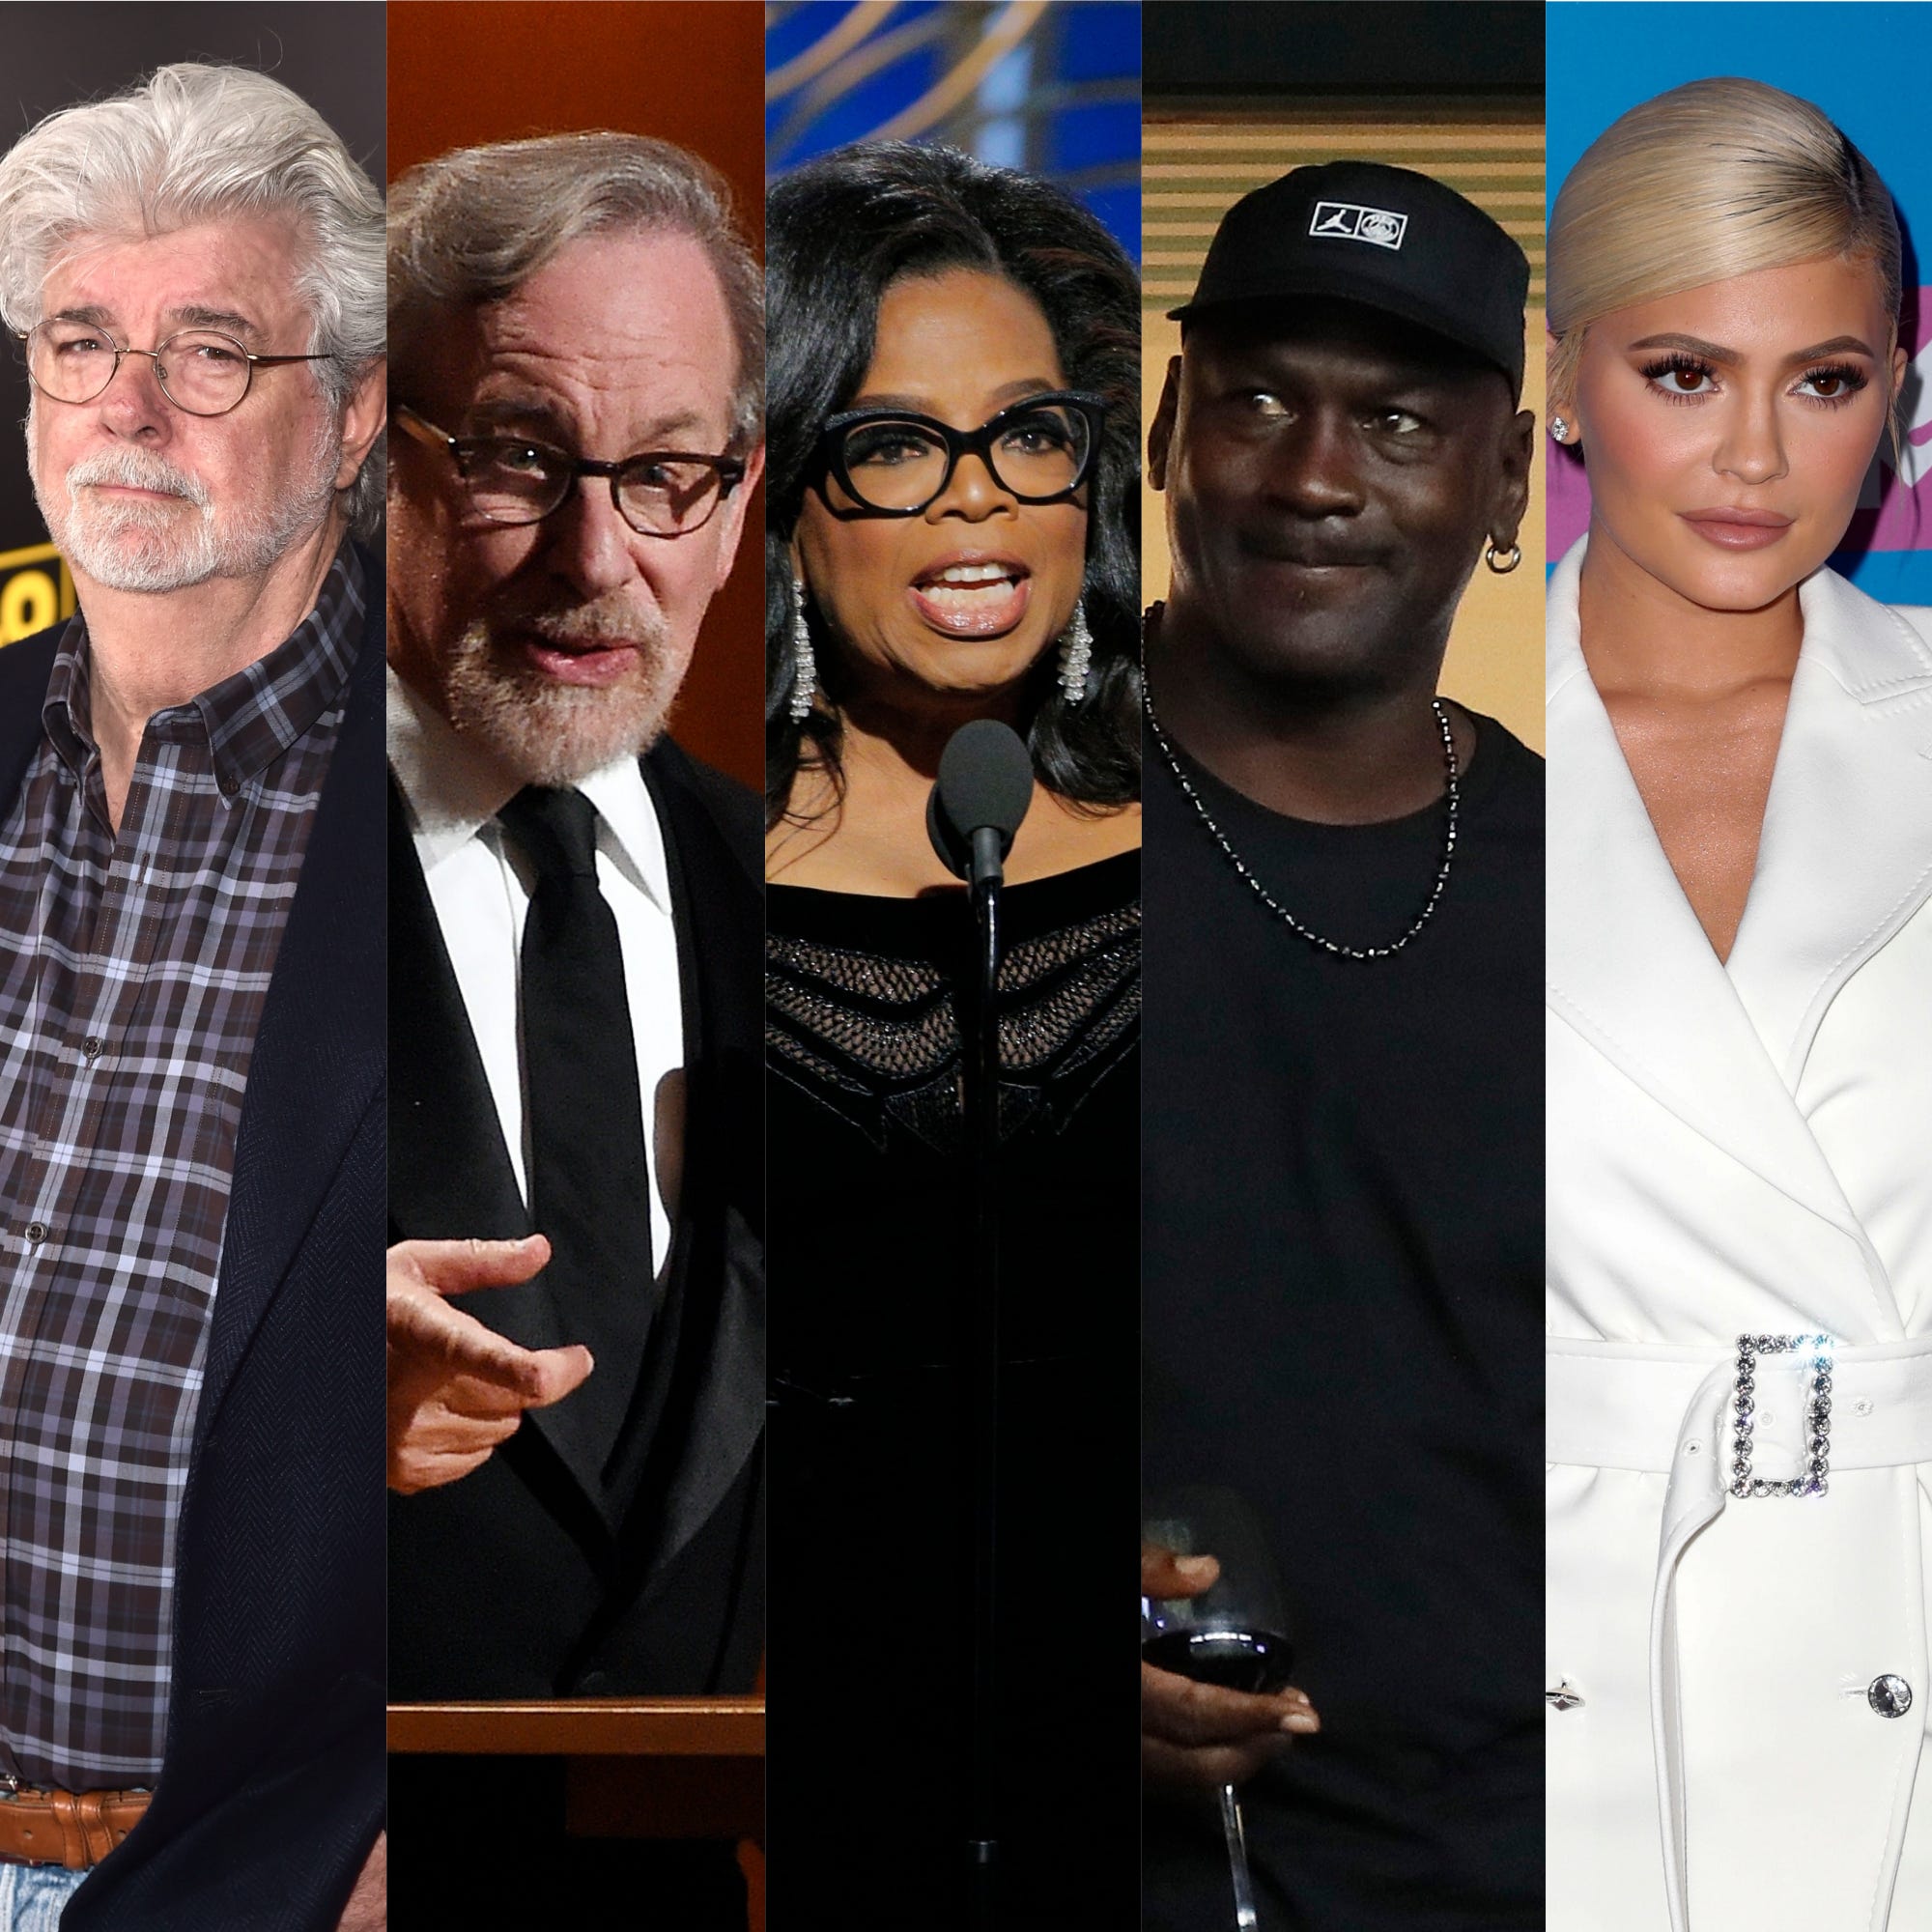 Begivenhed piedestal vedholdende Forbes' richest celebrities: George Lucas, Oprah, Kylie Jenner on list